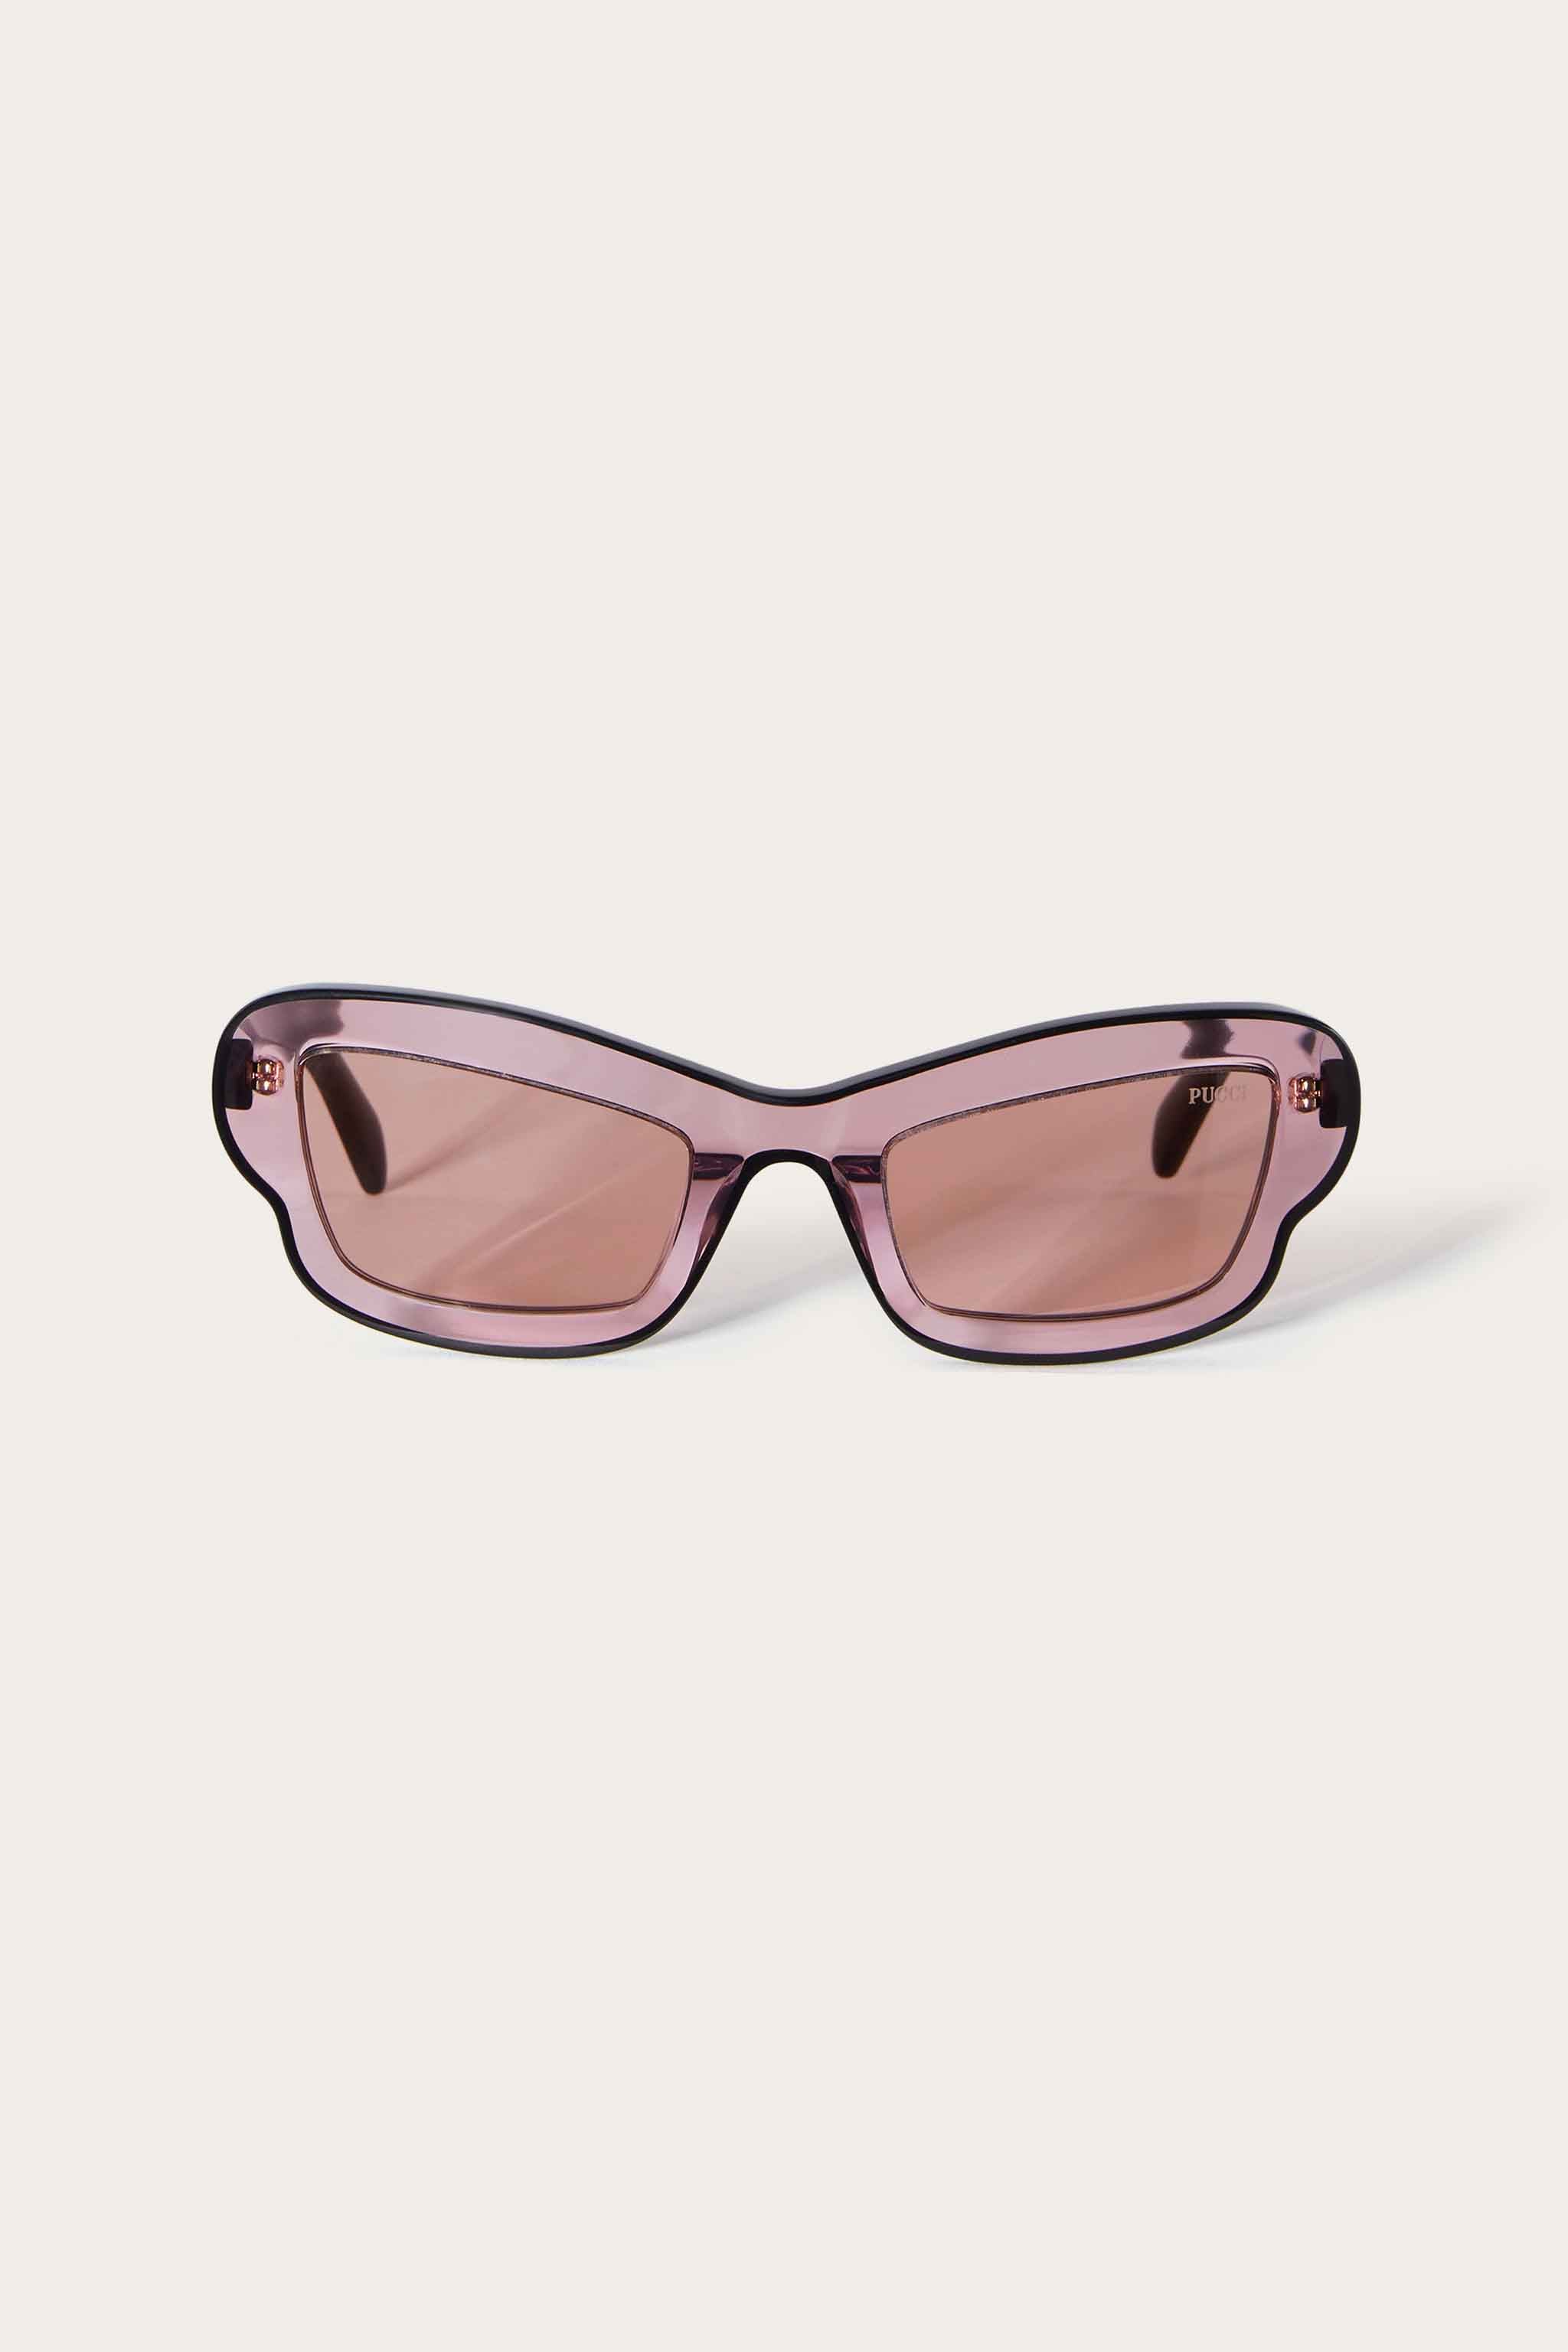 Pucci sunglasses: italian sunglass & more | Pucci